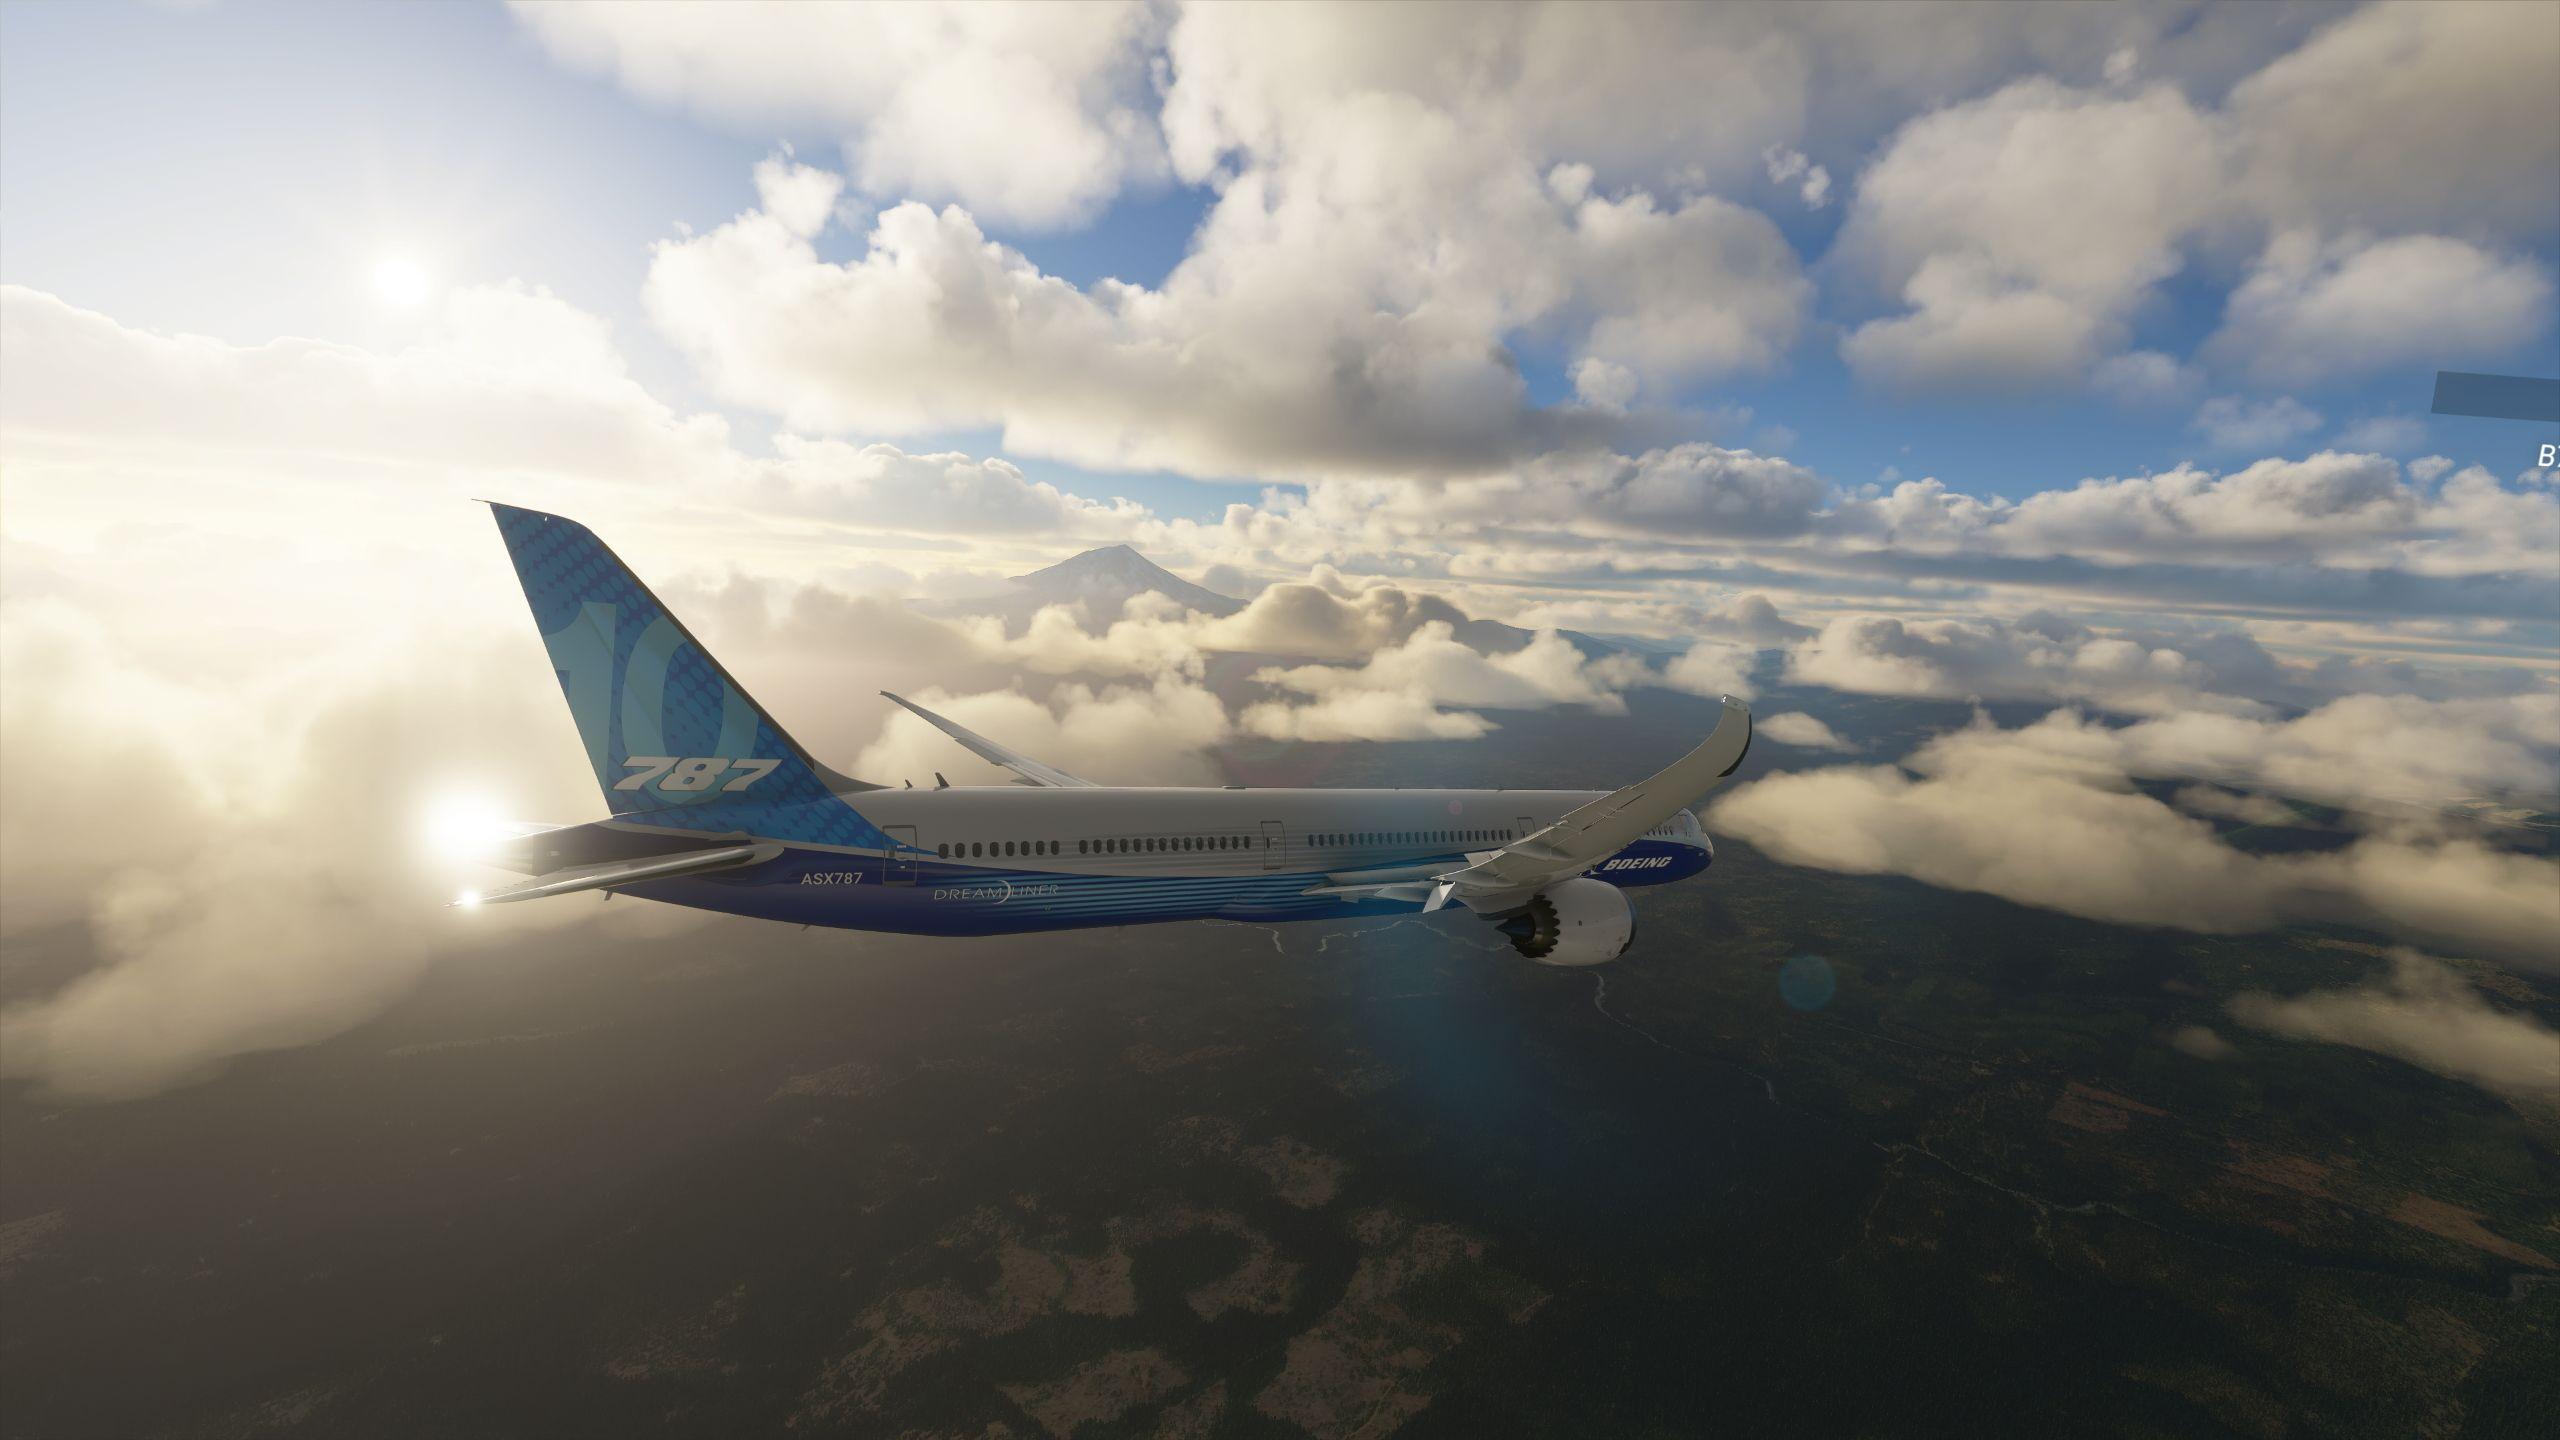 Microsoft flight simulator wallpaper - minering